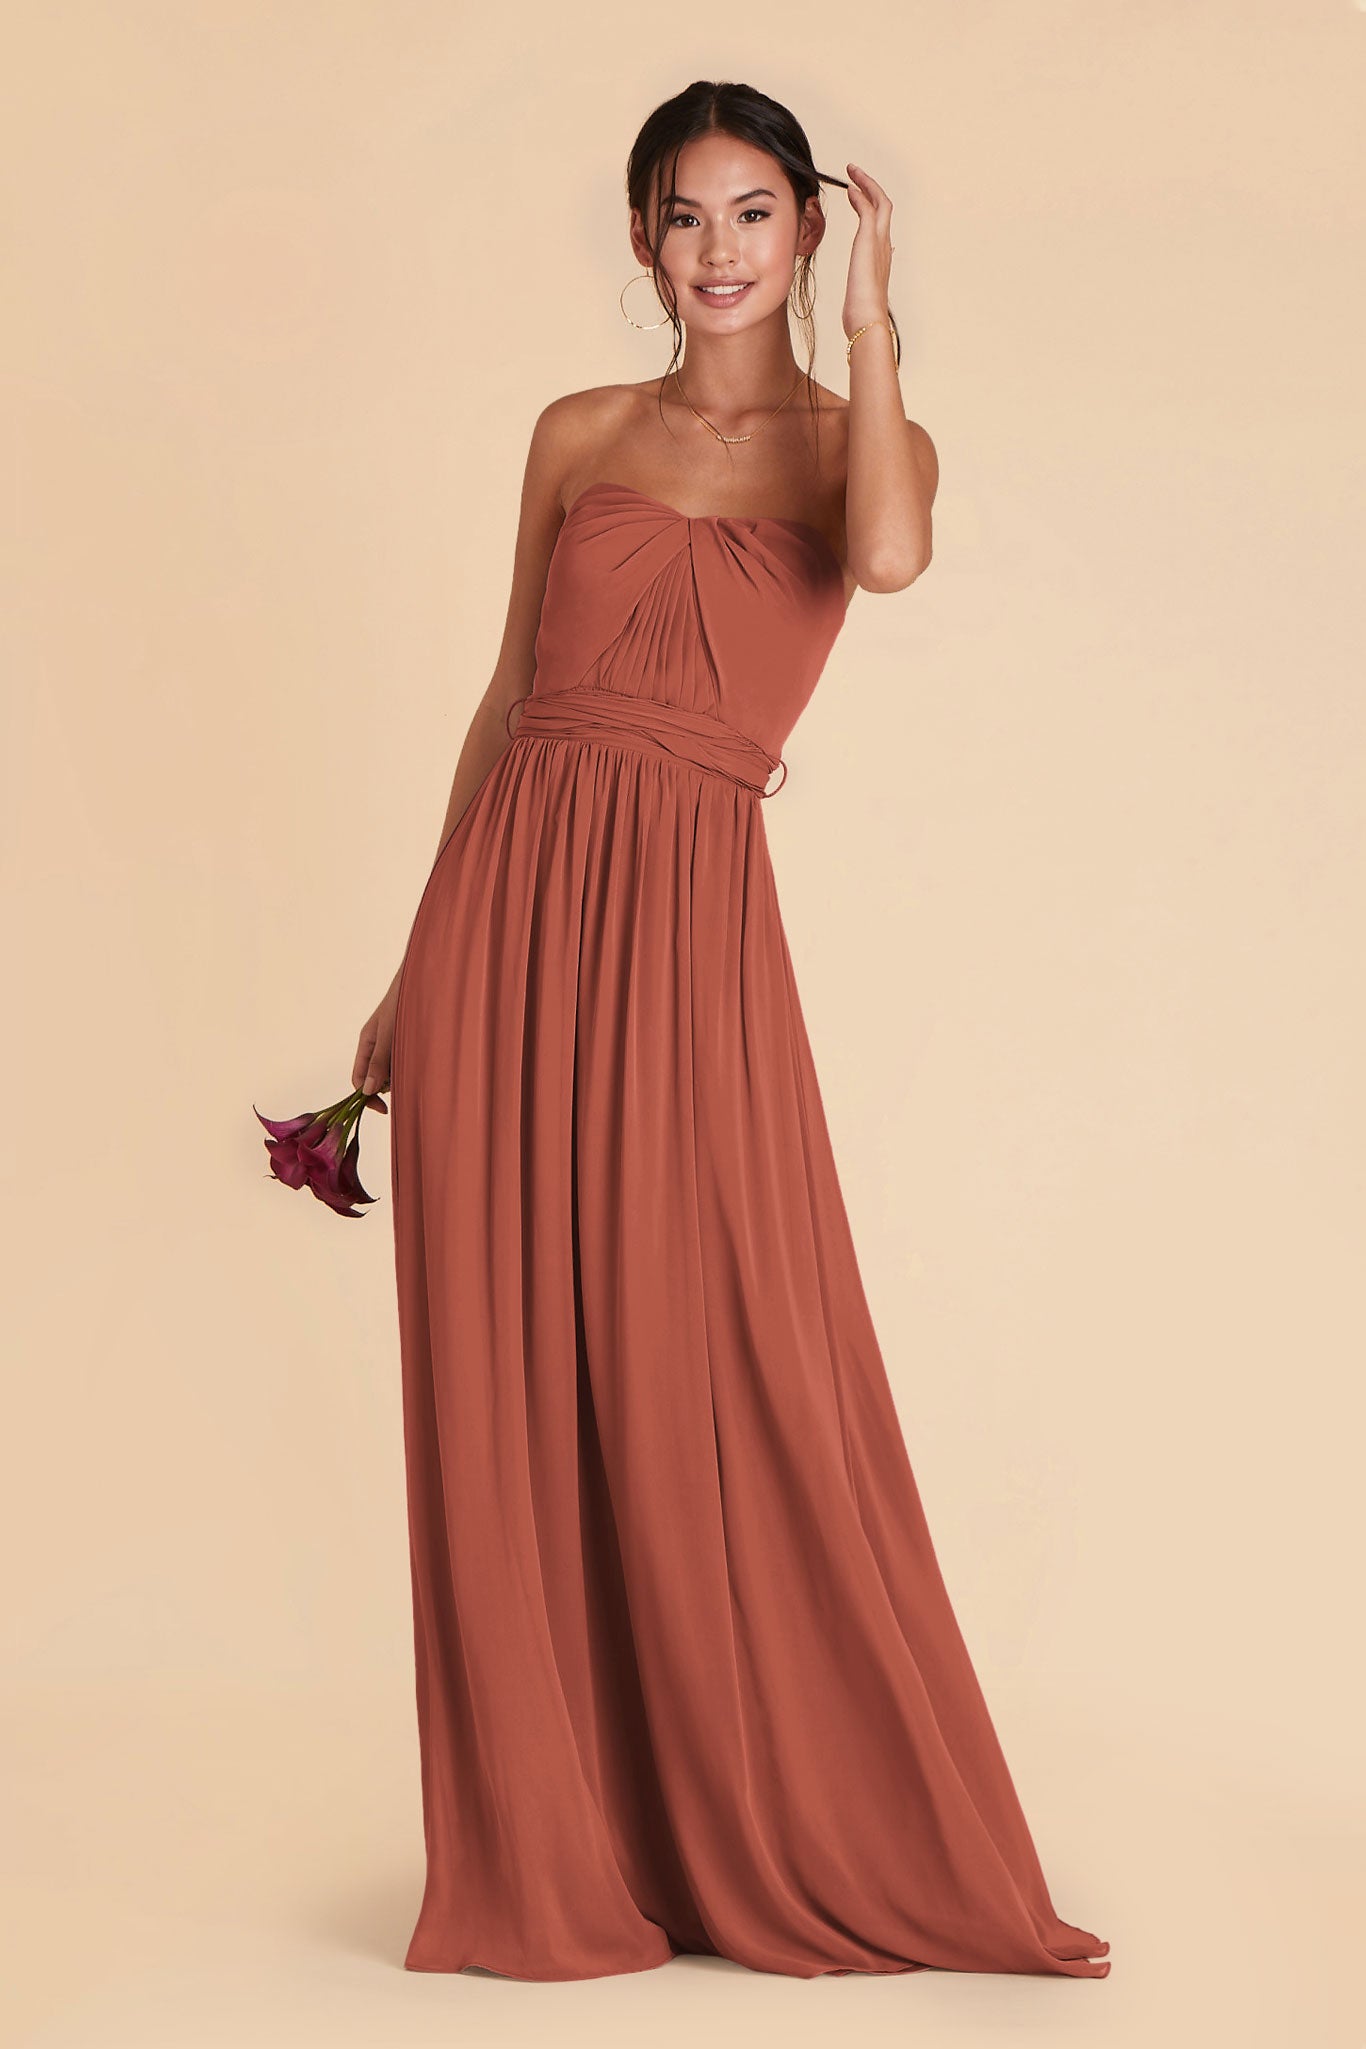 Desert Rose Grace Convertible Dress by Birdy Grey